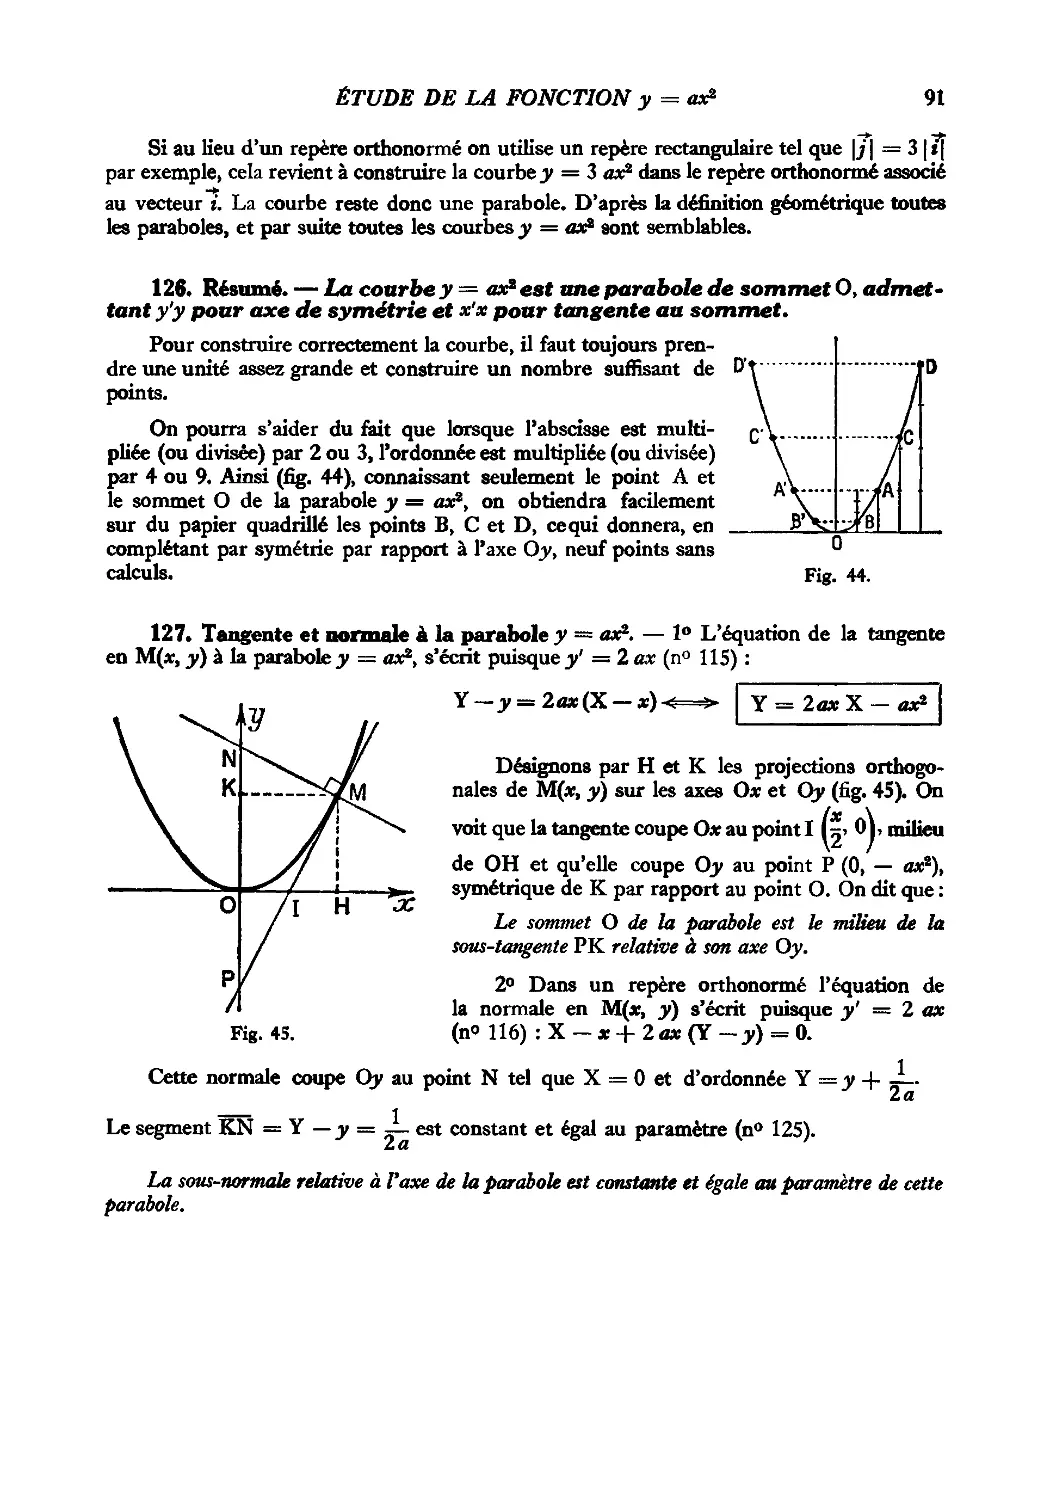 126. Résumé
127. Tangente et normale à la parabole y = ax²